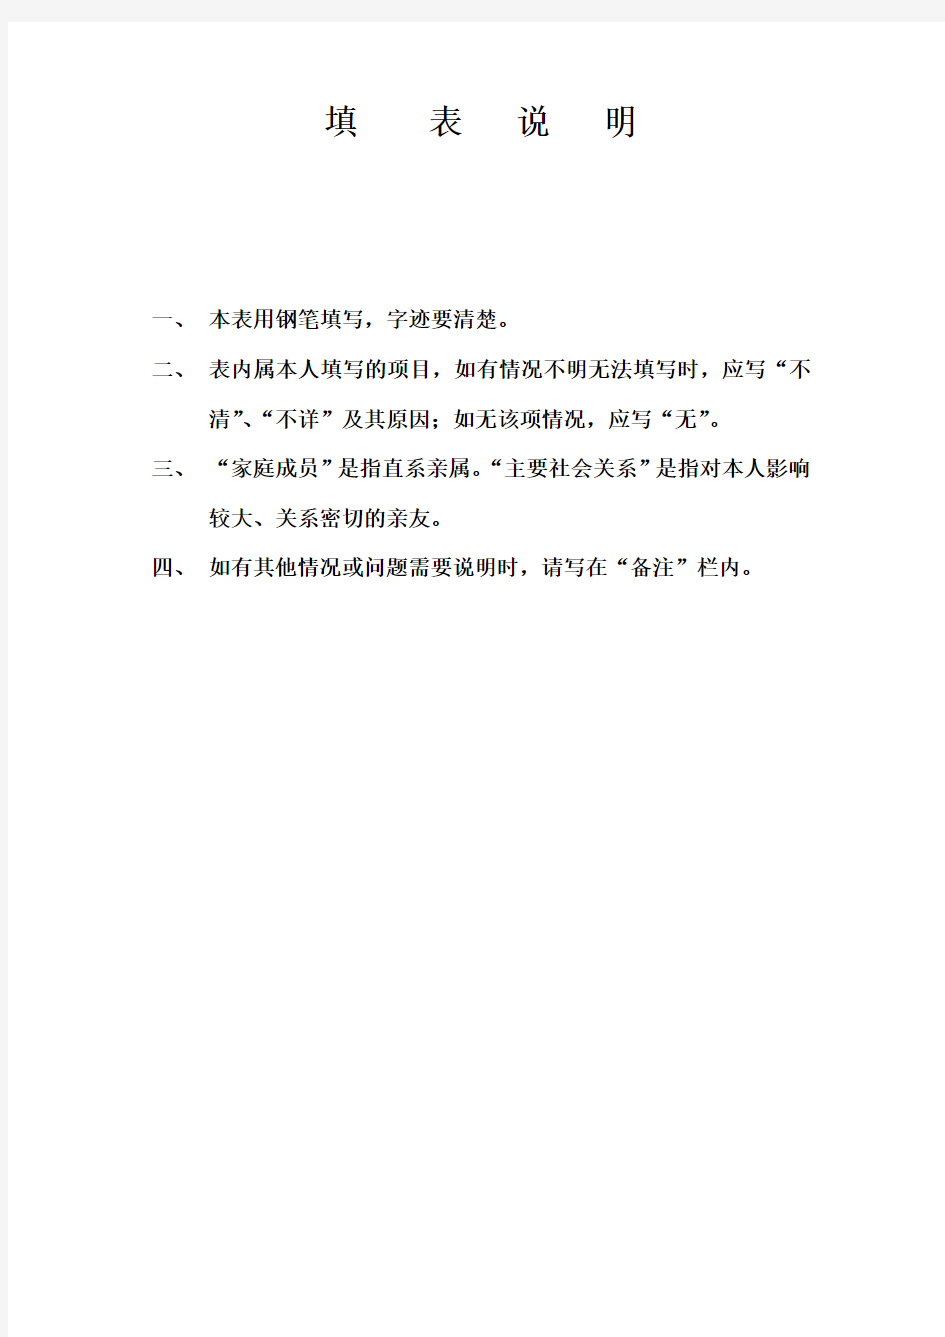 全校通用模板：上海大学研究生毕业登记表填写规范